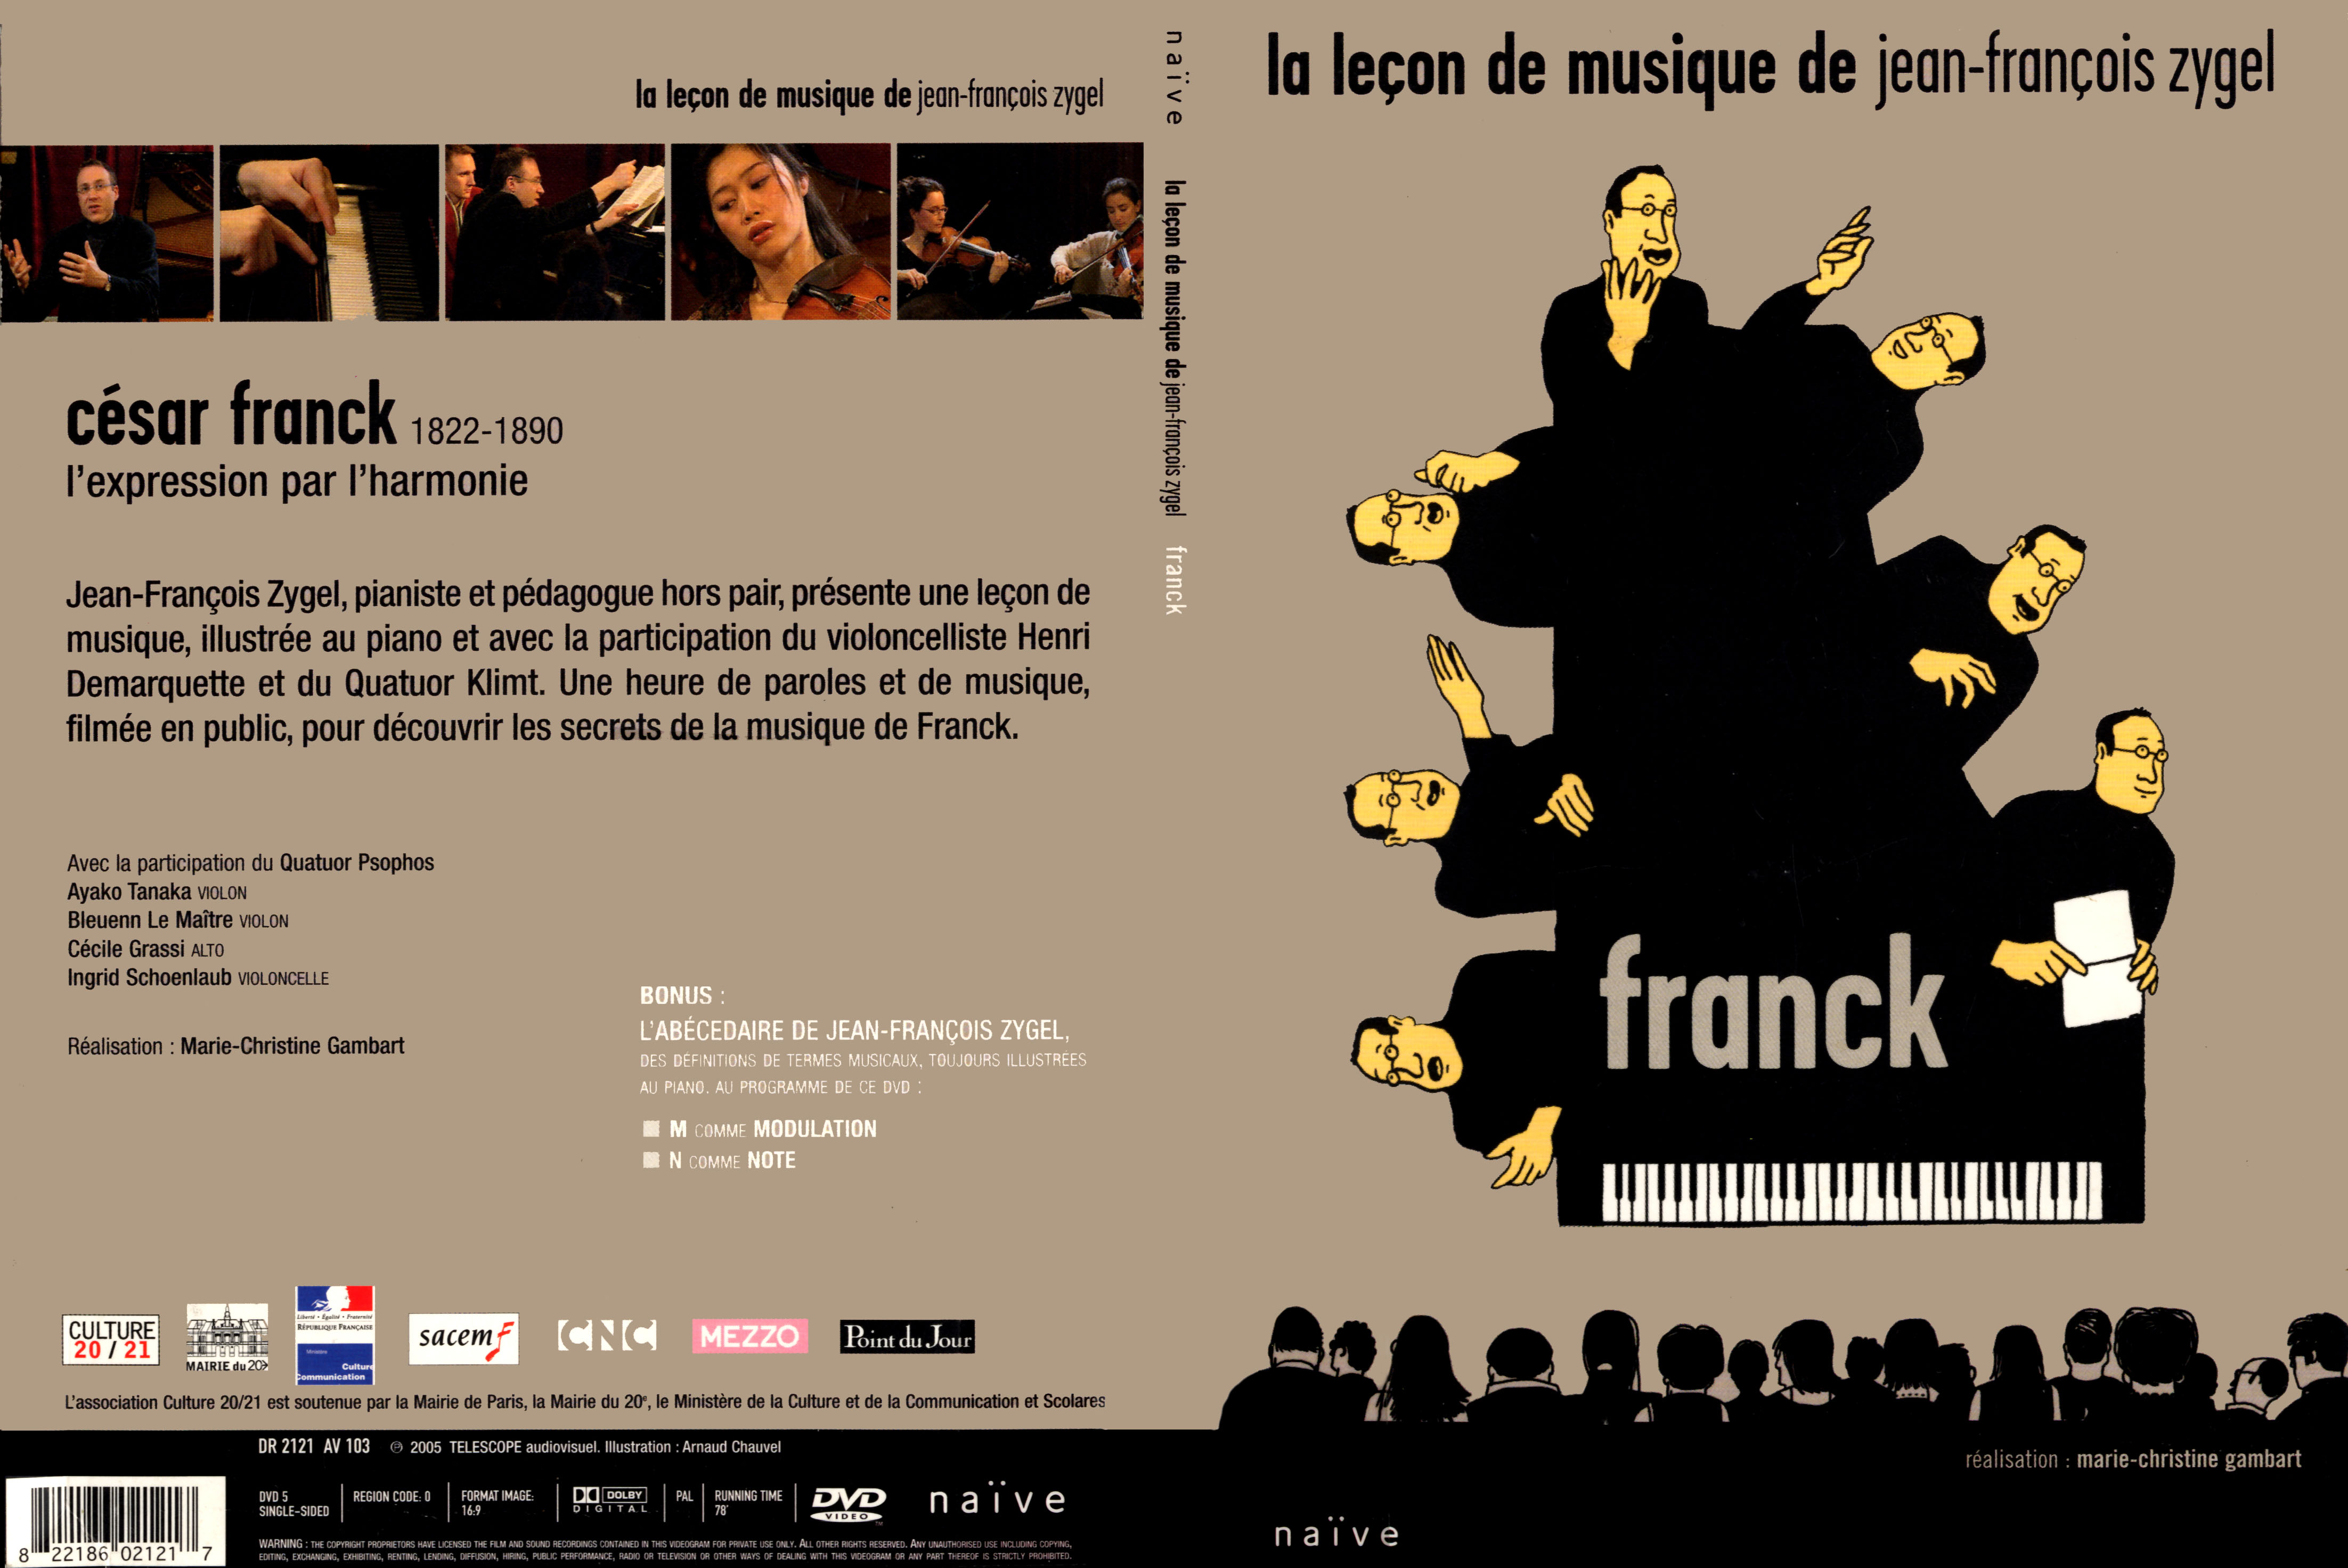 Jaquette DVD La lecon de musique de Jean-Francois Zygel - Franck